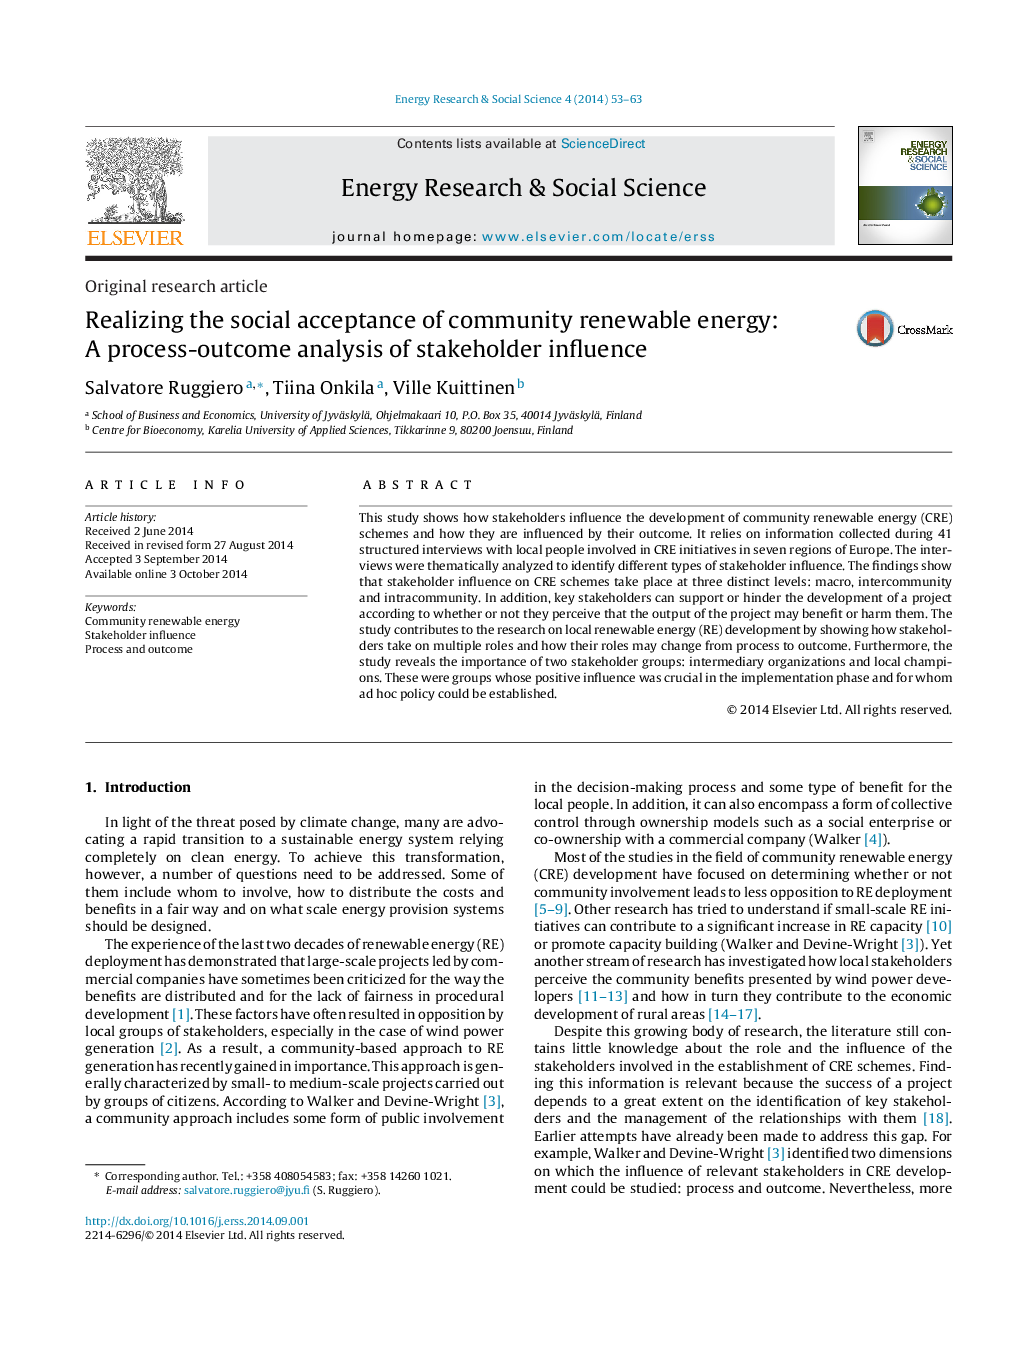 تحقق پذیری اجتماعی از انرژی تجدید پذیر جامعه: تجزیه و تحلیل فرایند نتیجه نفوذ ذینفعان